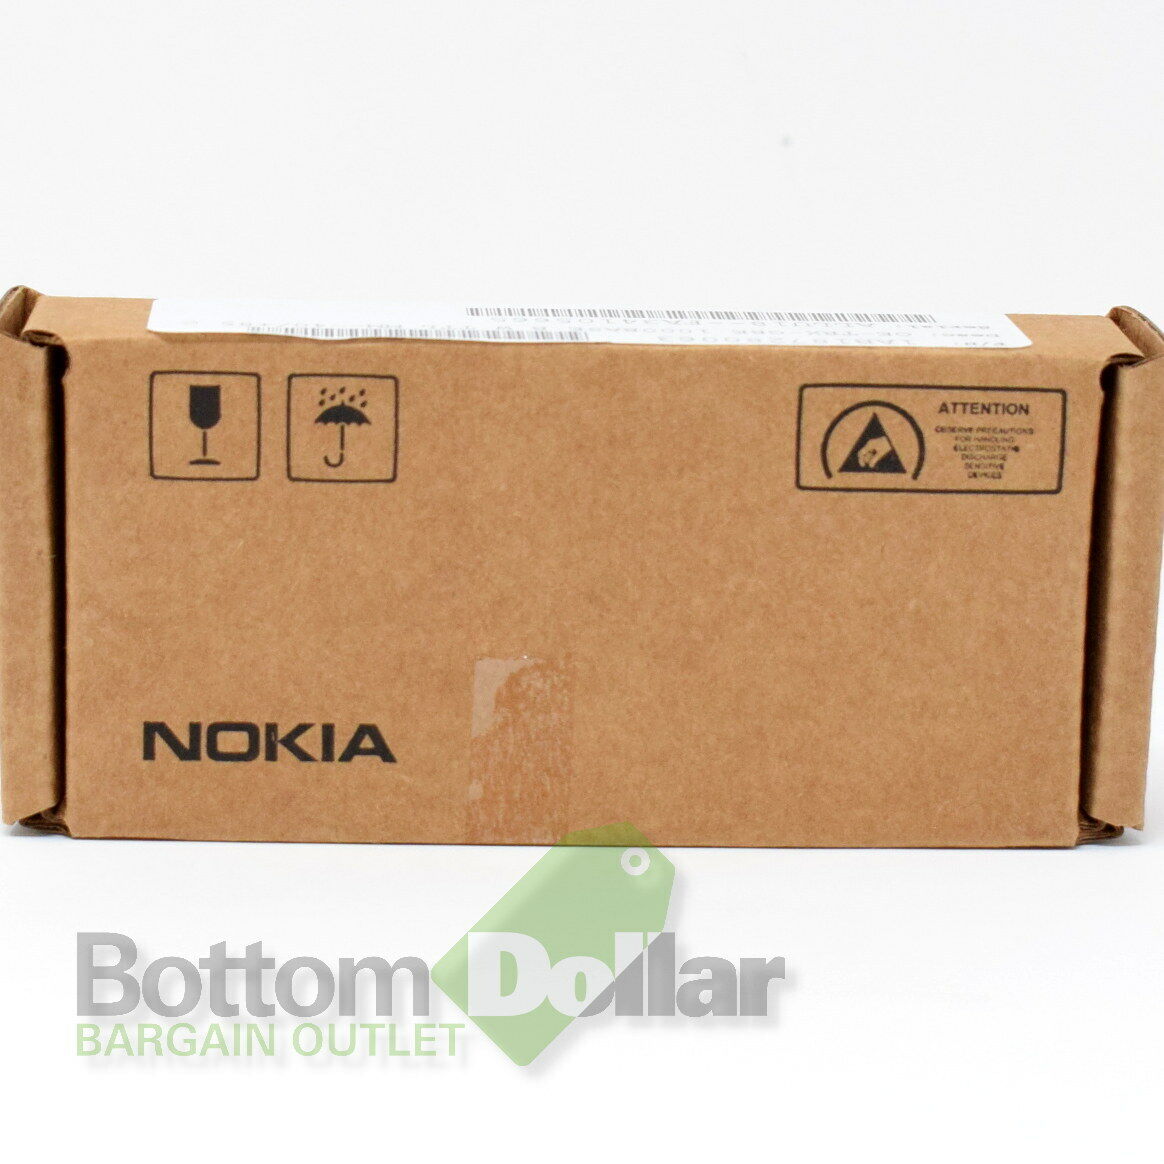 Nokia 1AB187280063 OE-TRX-GBE 1000Base B W TTL MM--40/+85 C Gigabit Ethernet